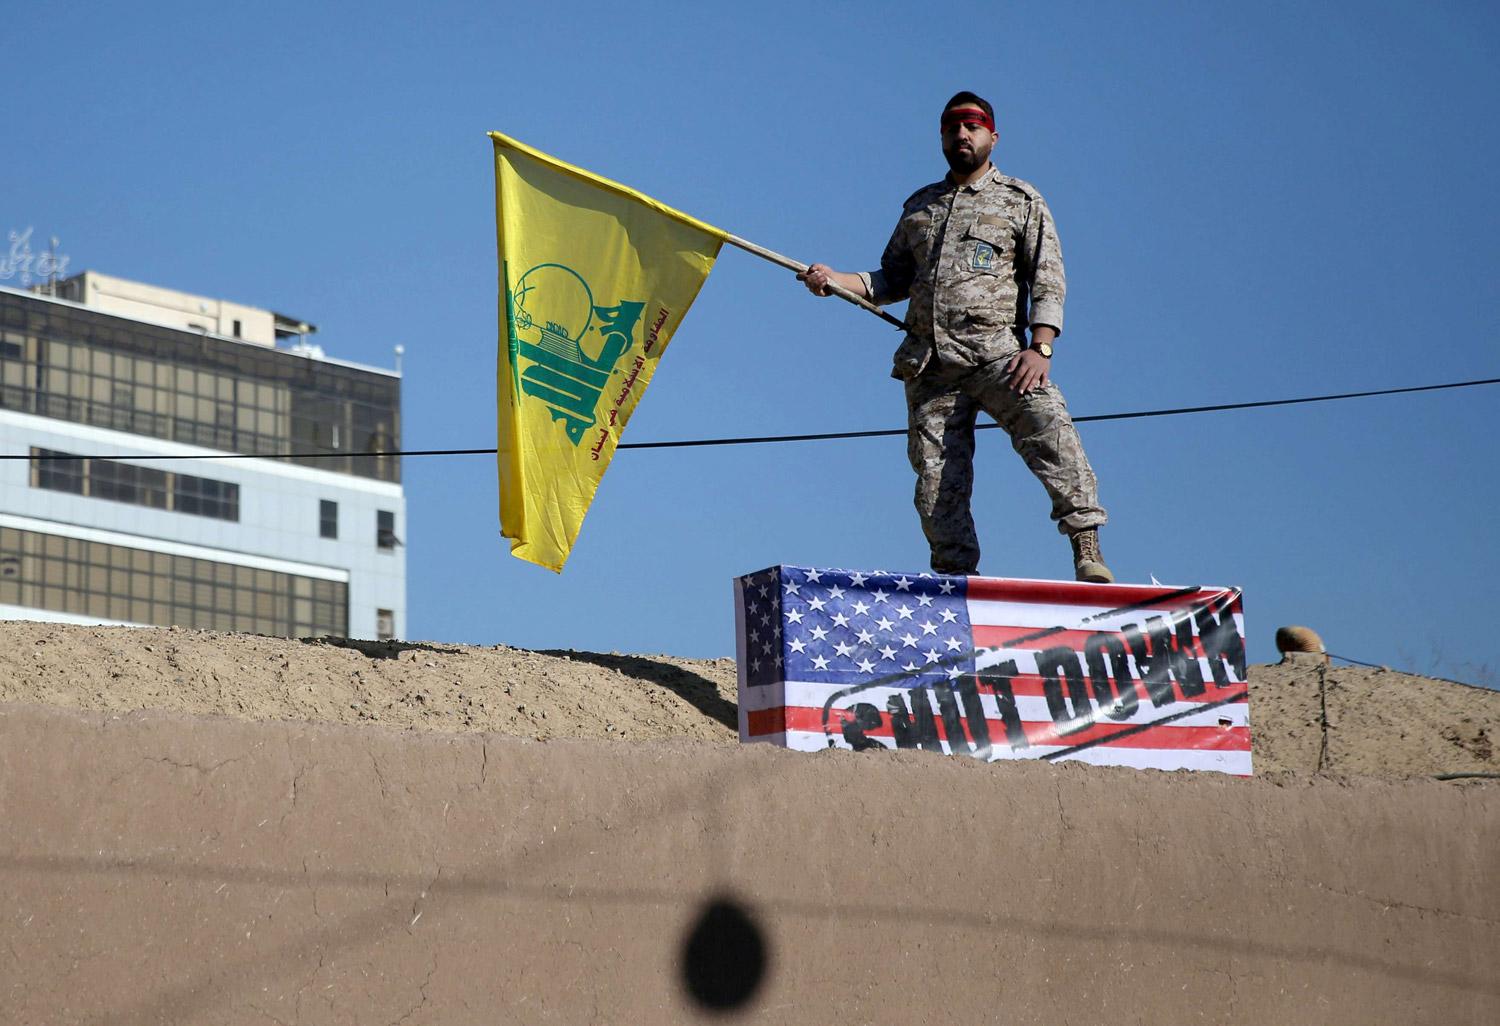 اللامي كان قائدا في ميليشيات حزب الله العراقي وهي اكثر الفصائل عداء للقوات الاميركية